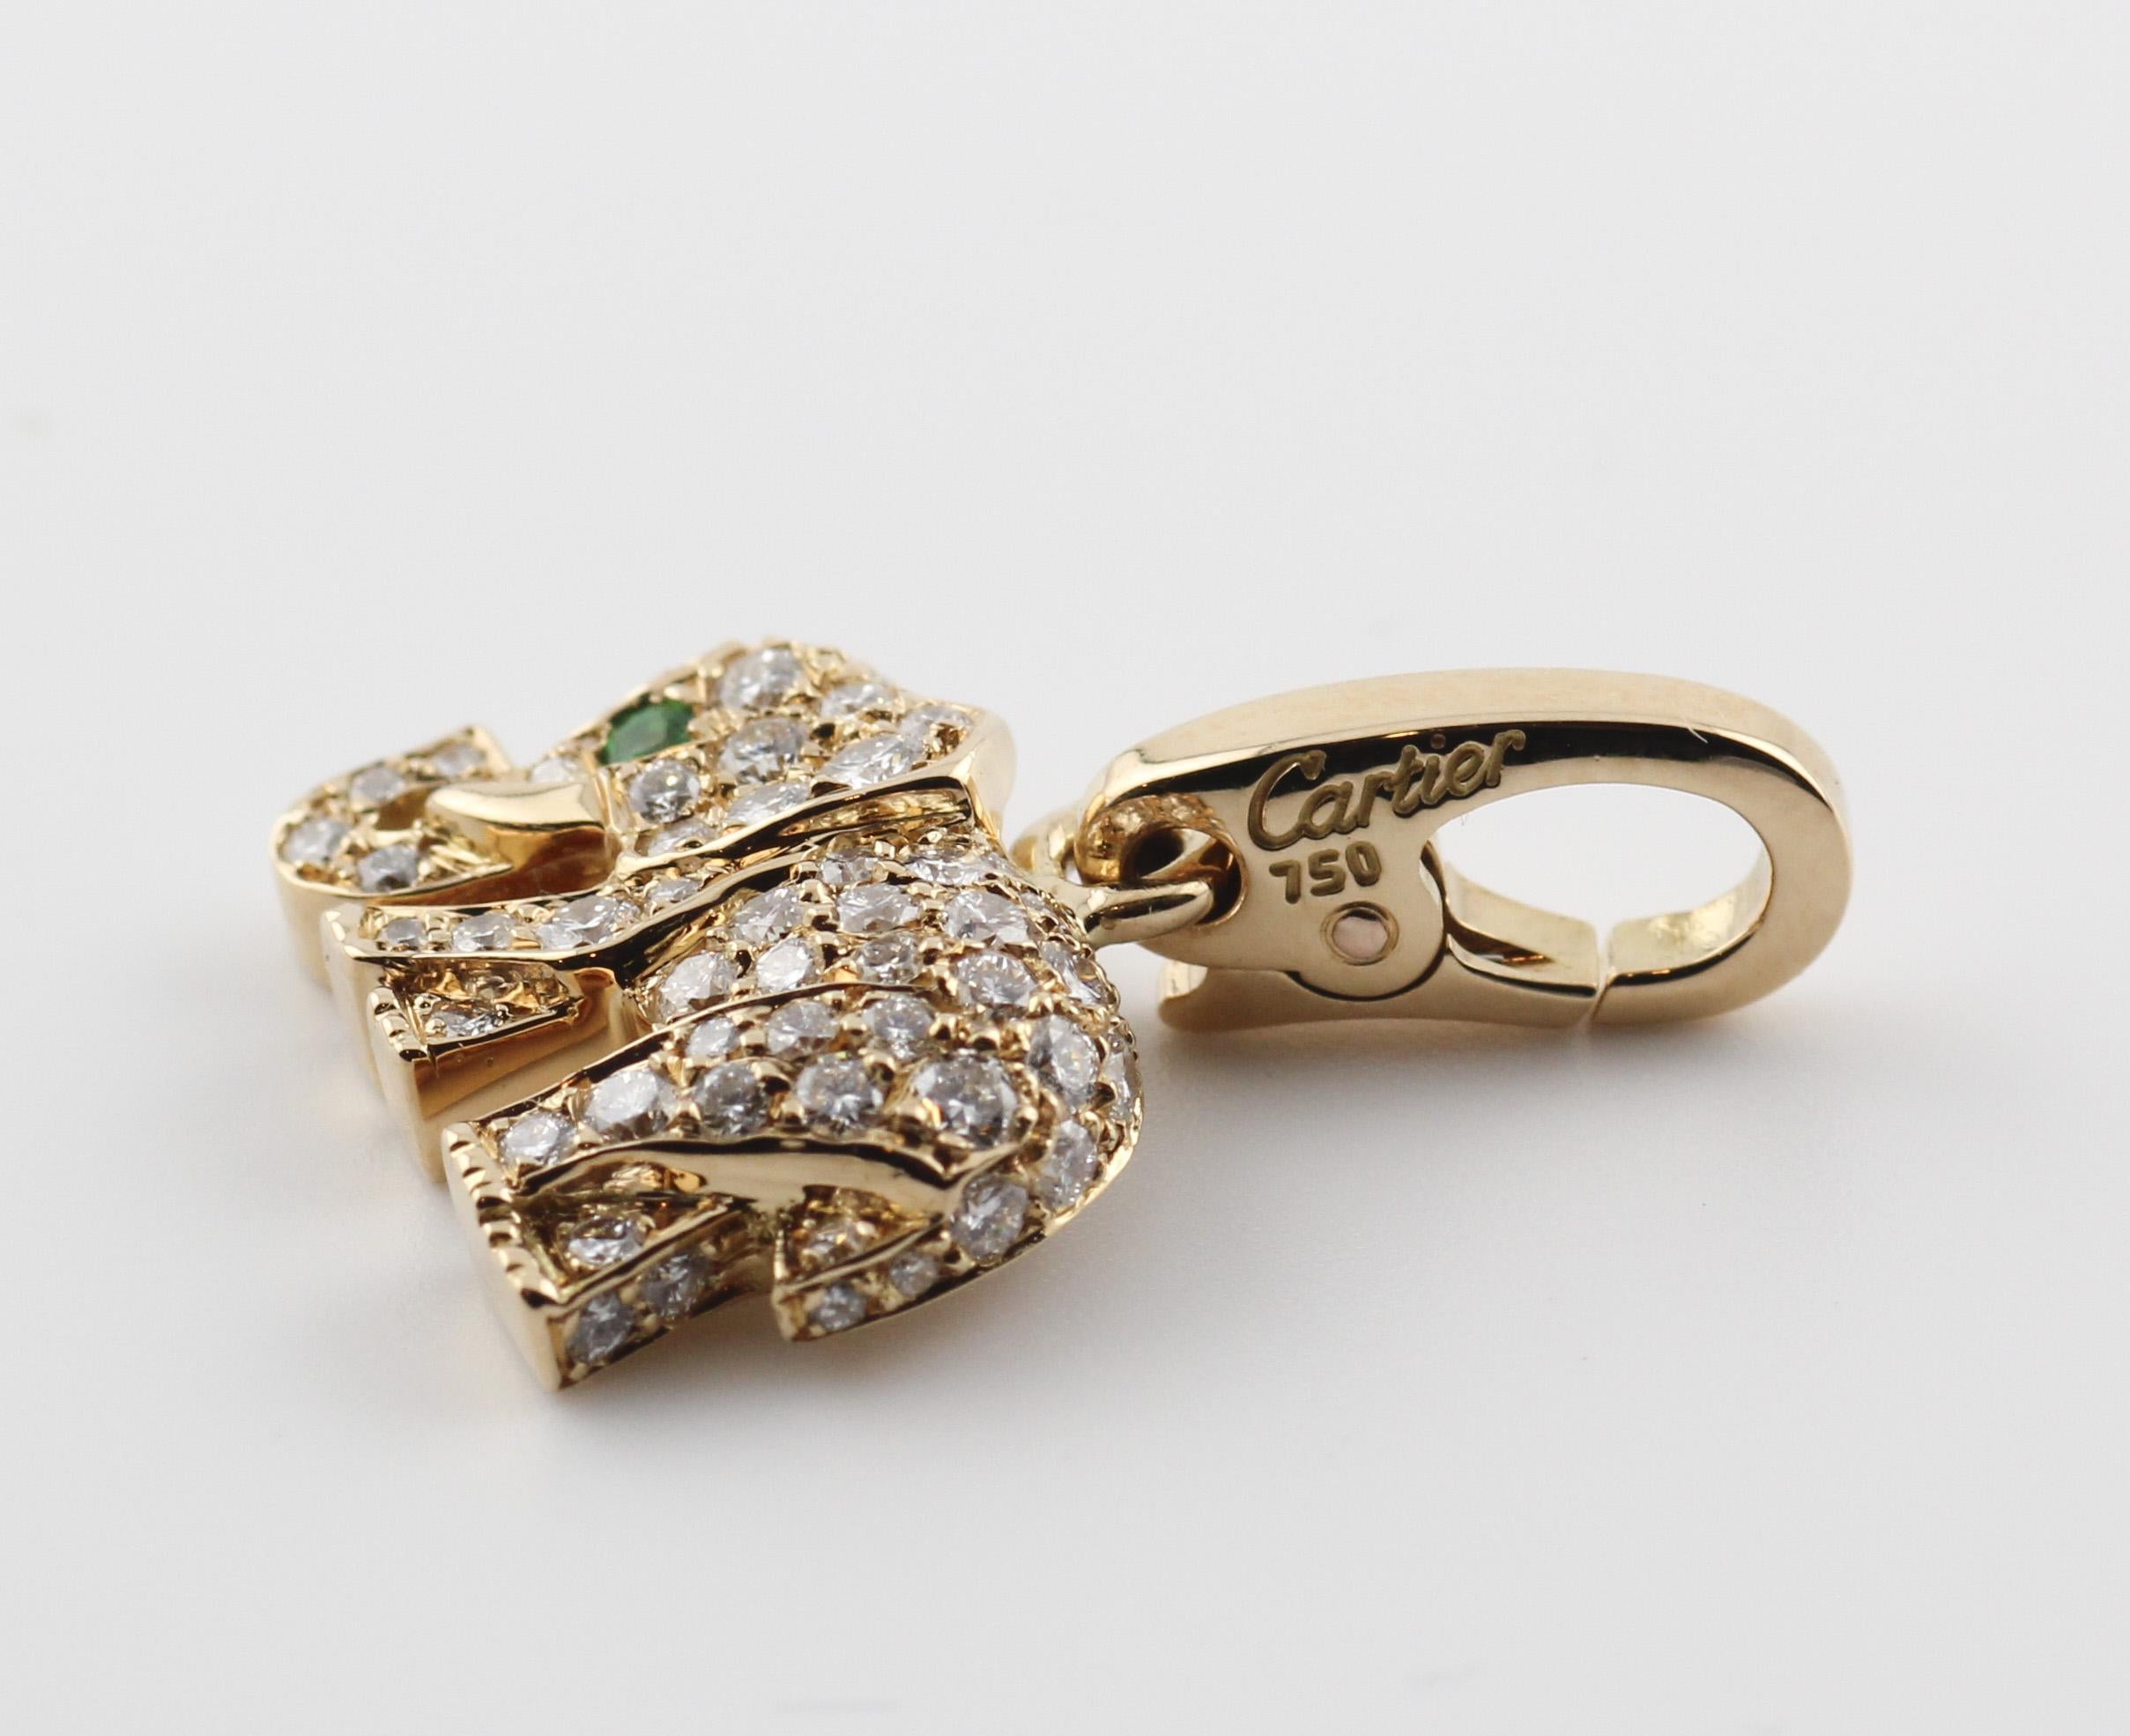 Fangen Sie die Mystik und Majestät des Tierreichs ein mit dem Cartier Diamond Emerald 18 Karat Gelbgold Elephant Charm, einem bezaubernden Symbol für Stärke, Weisheit und Opulenz. Dieser exquisite Charme verbindet die legendäre Handwerkskunst von